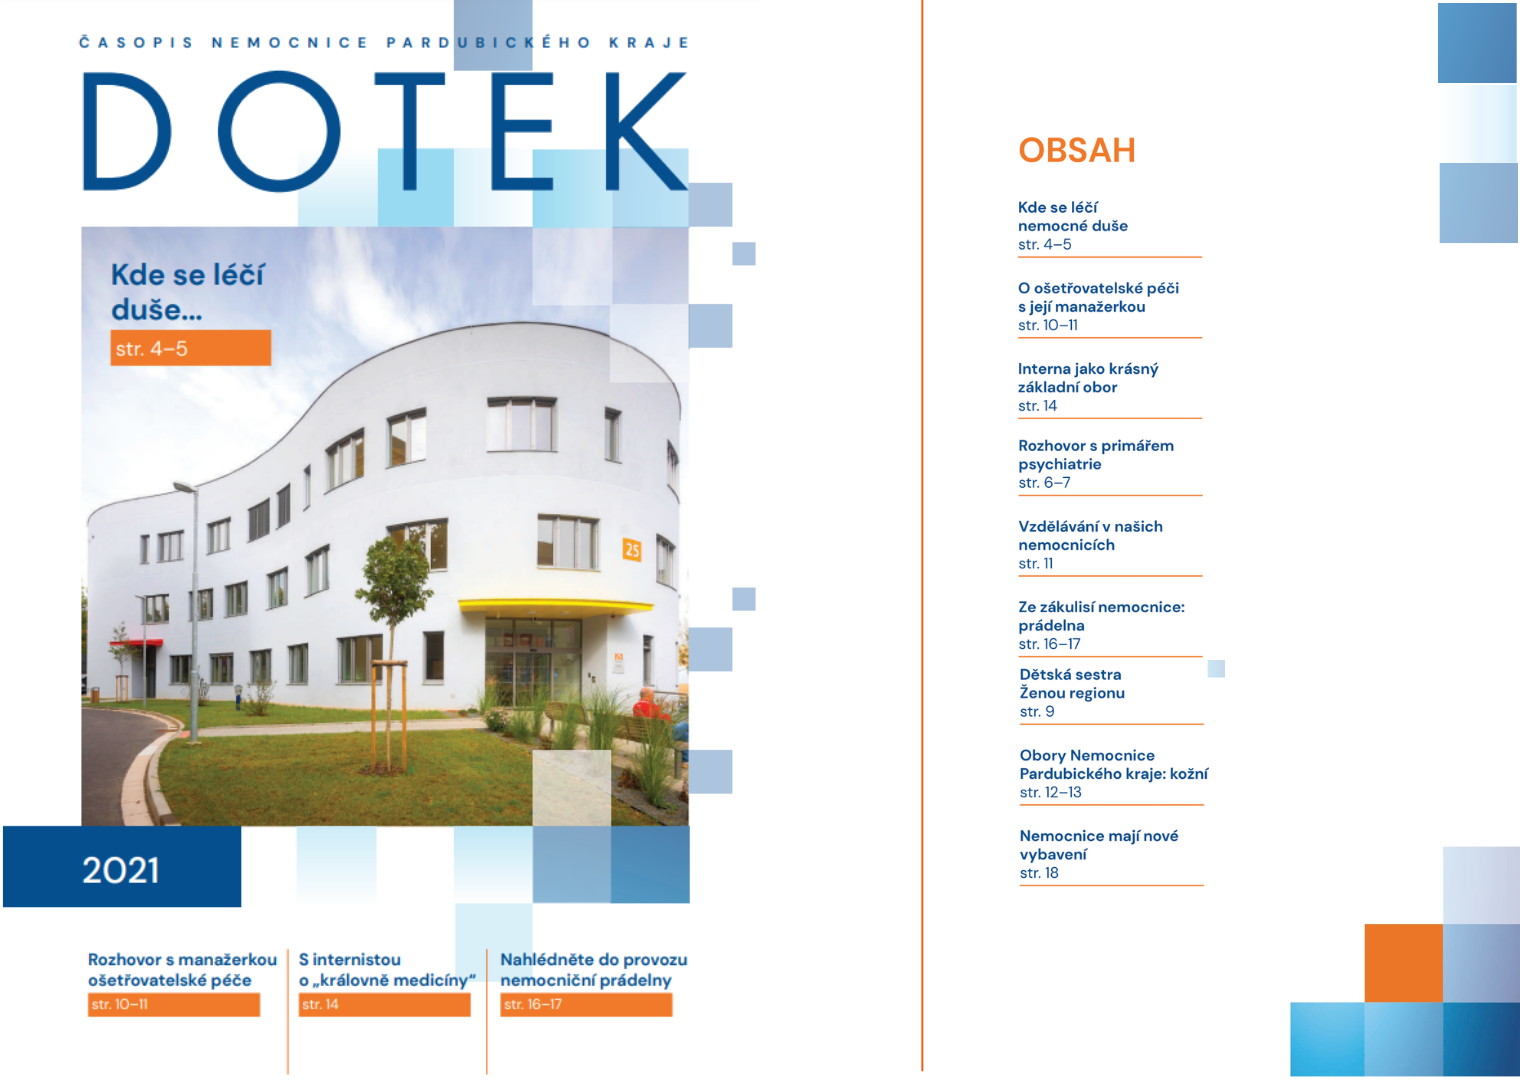 Vyšlo nové číslo nemocničního časopisu Dotek